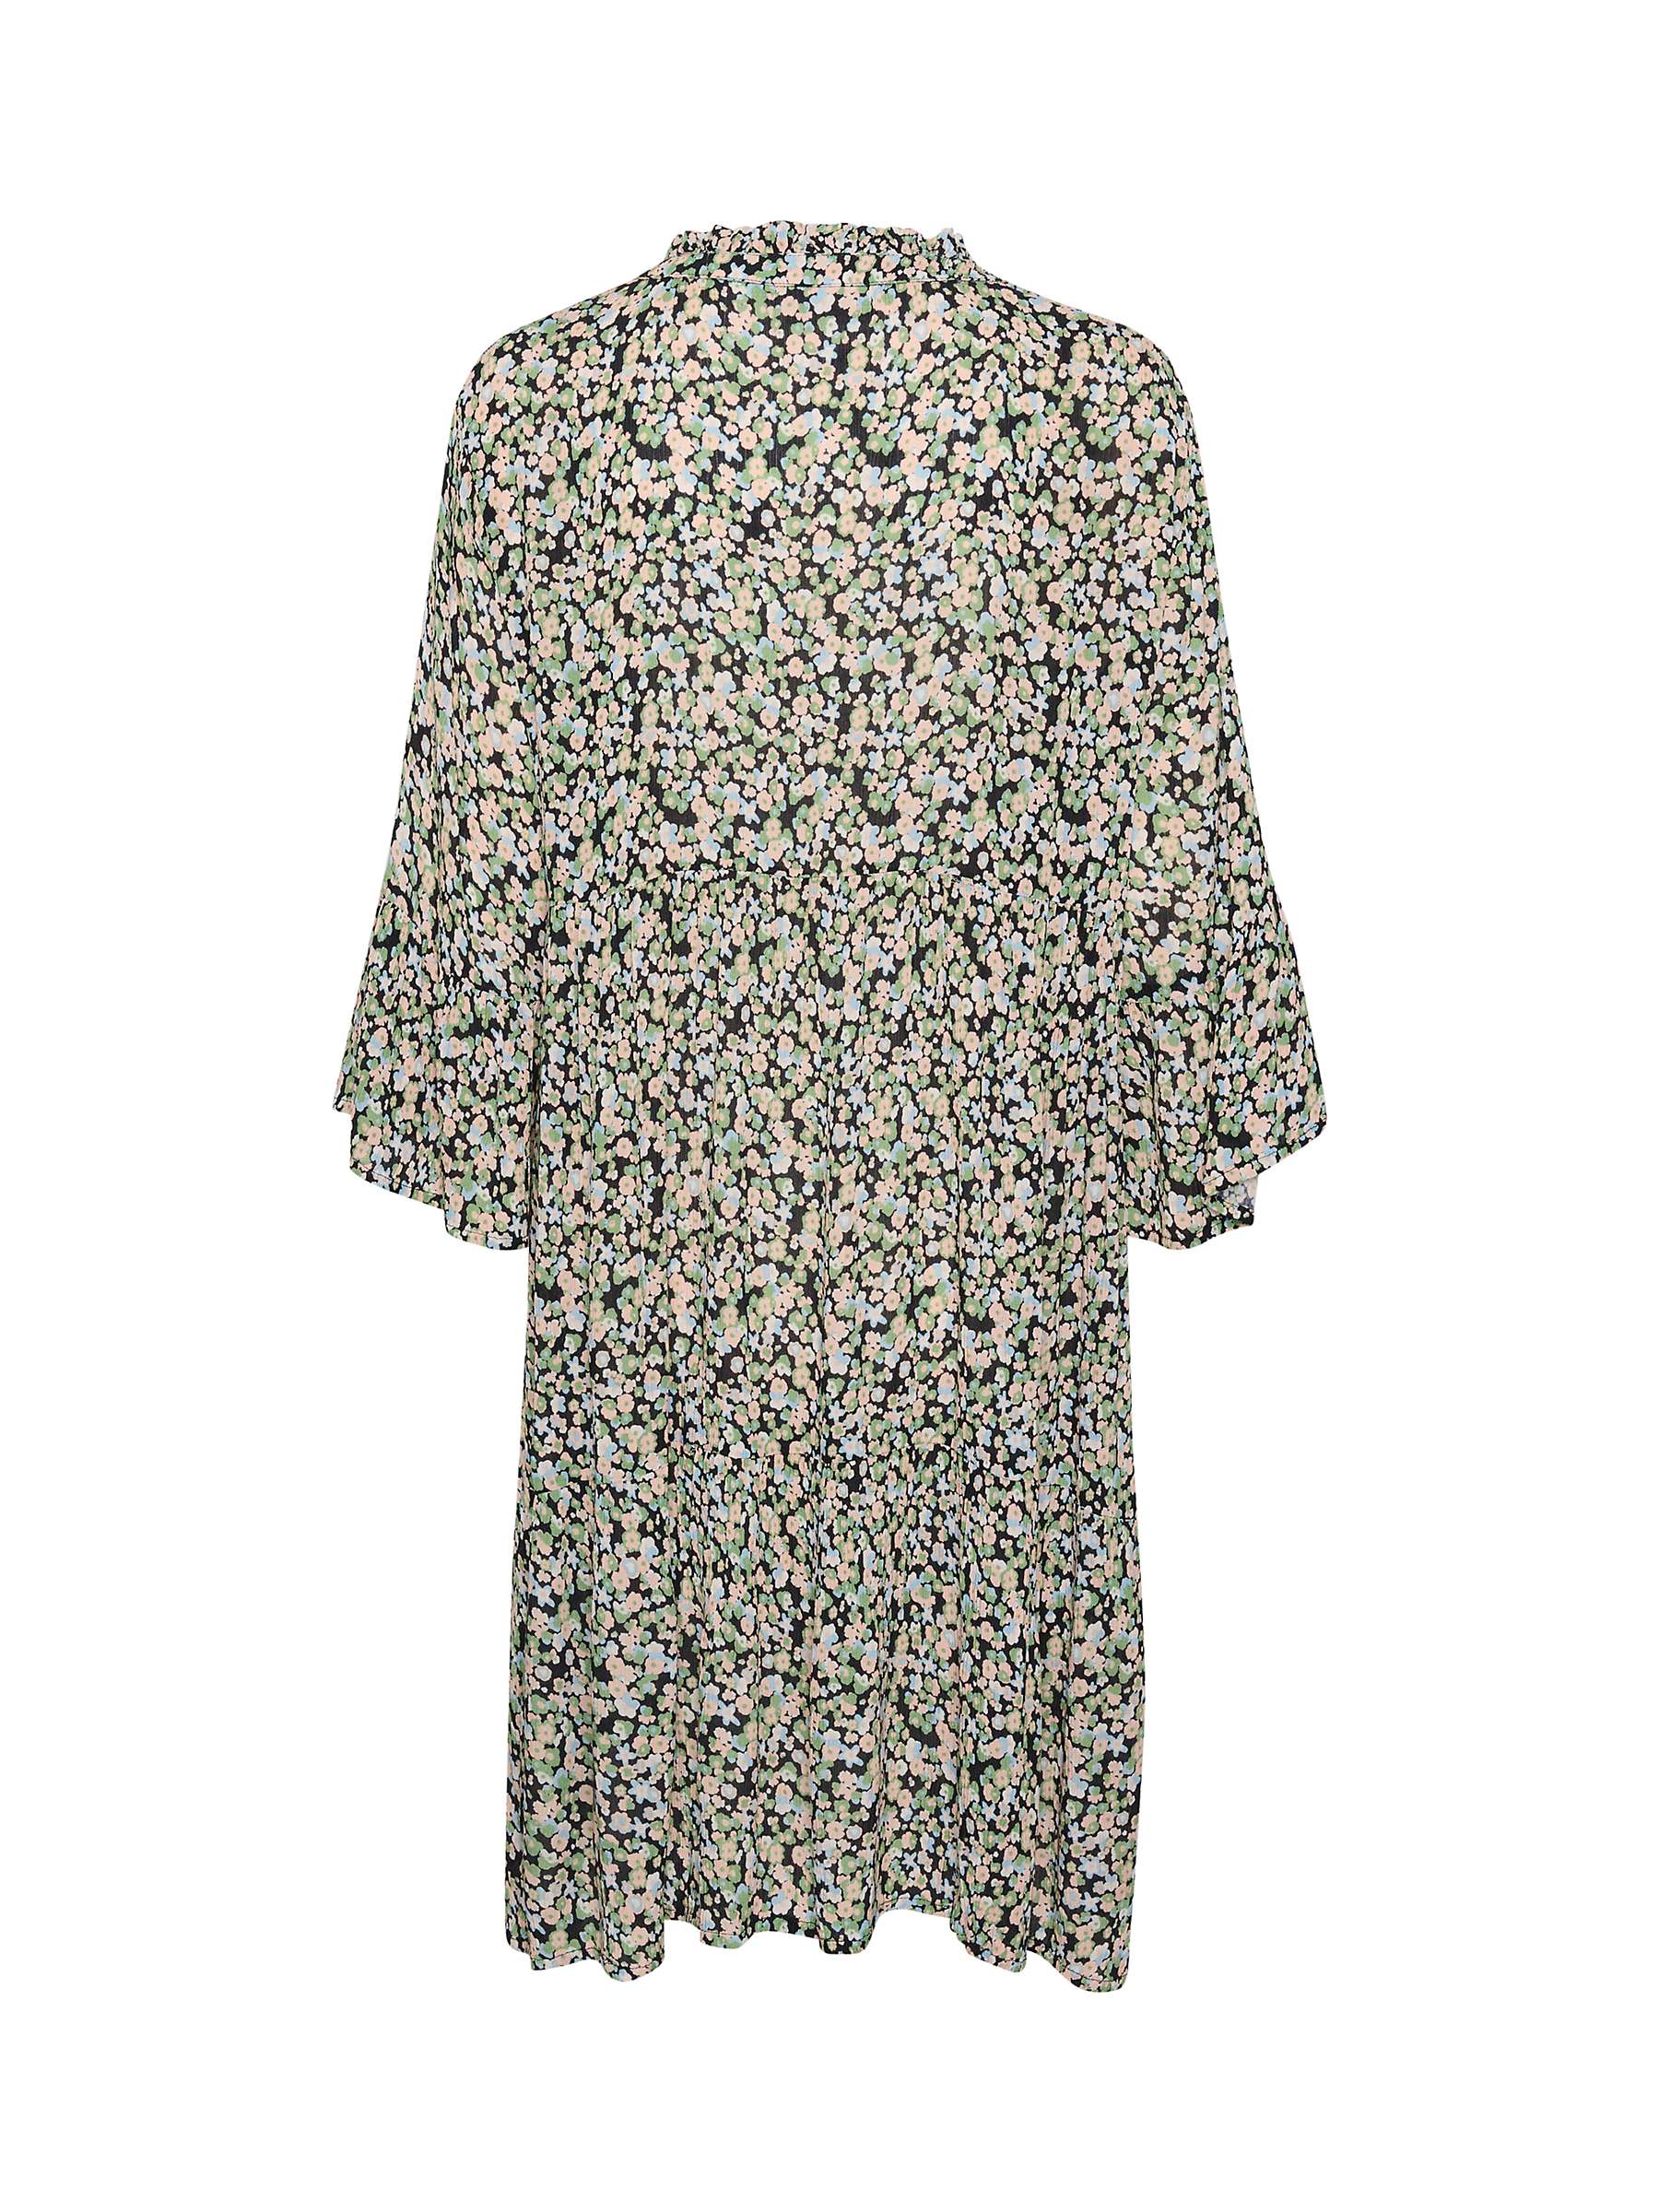 Buy KAFFE Jean Floral Dress, Blue/Pink/Green Online at johnlewis.com